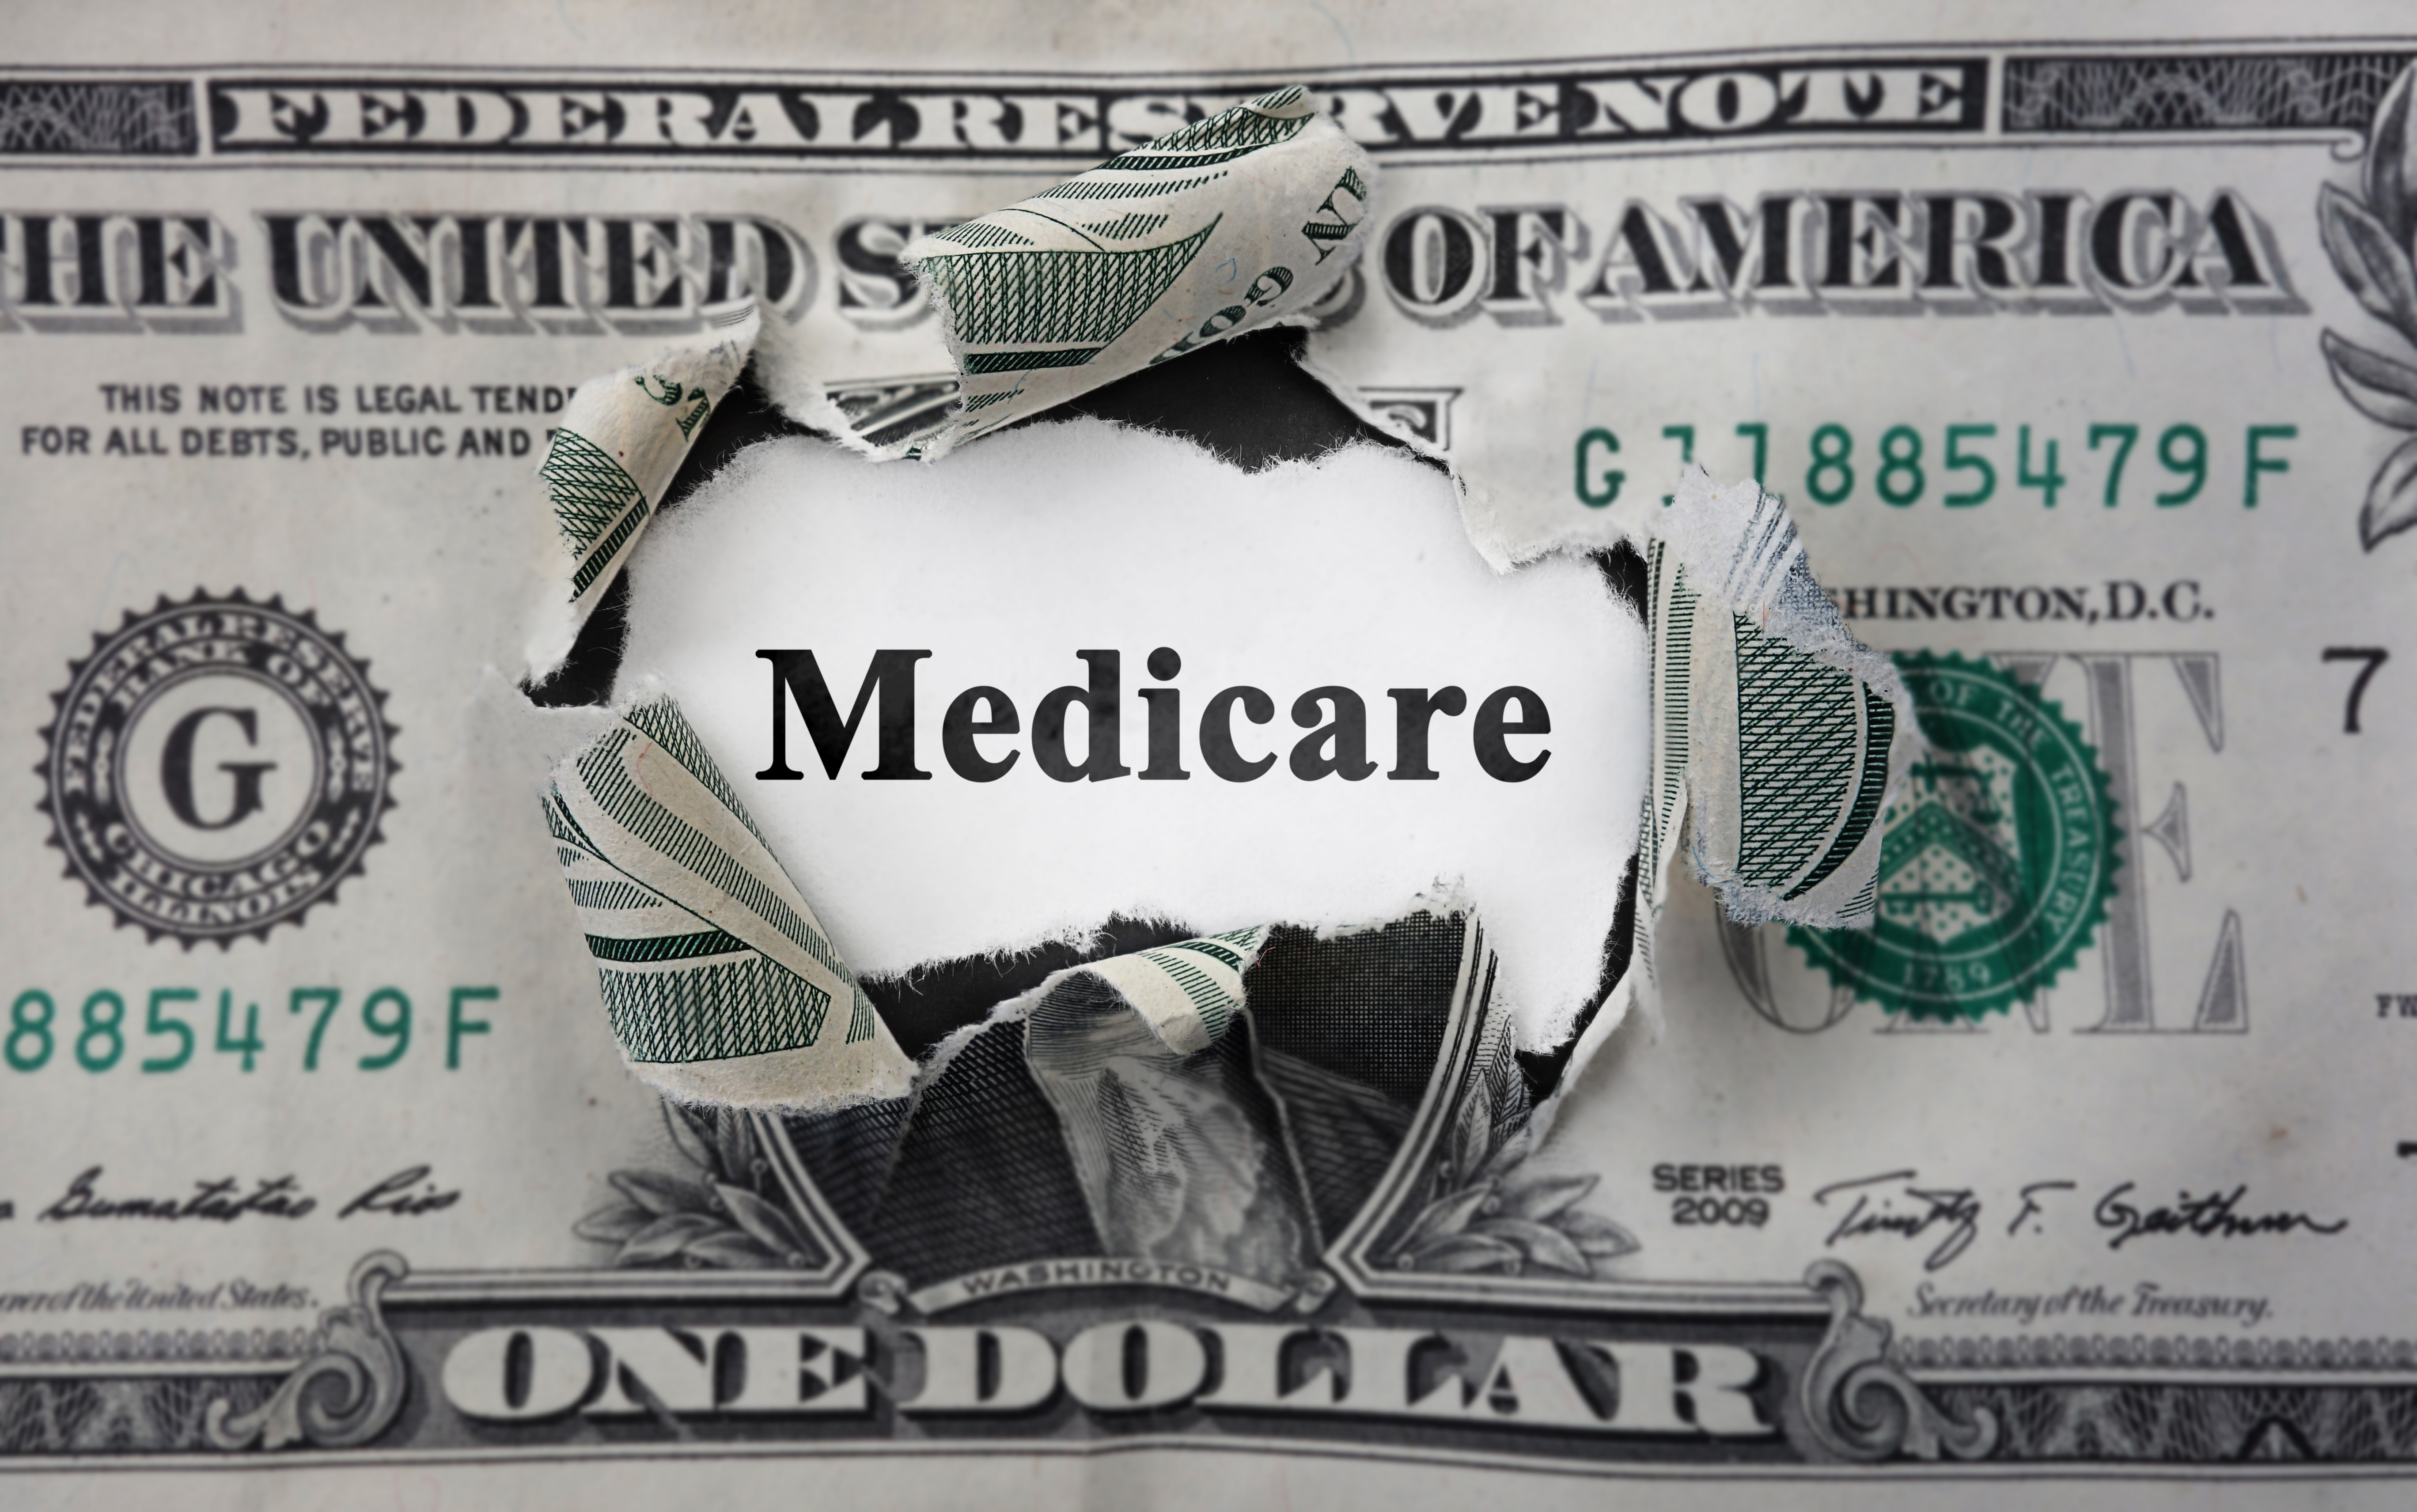 Medicare spending costs money